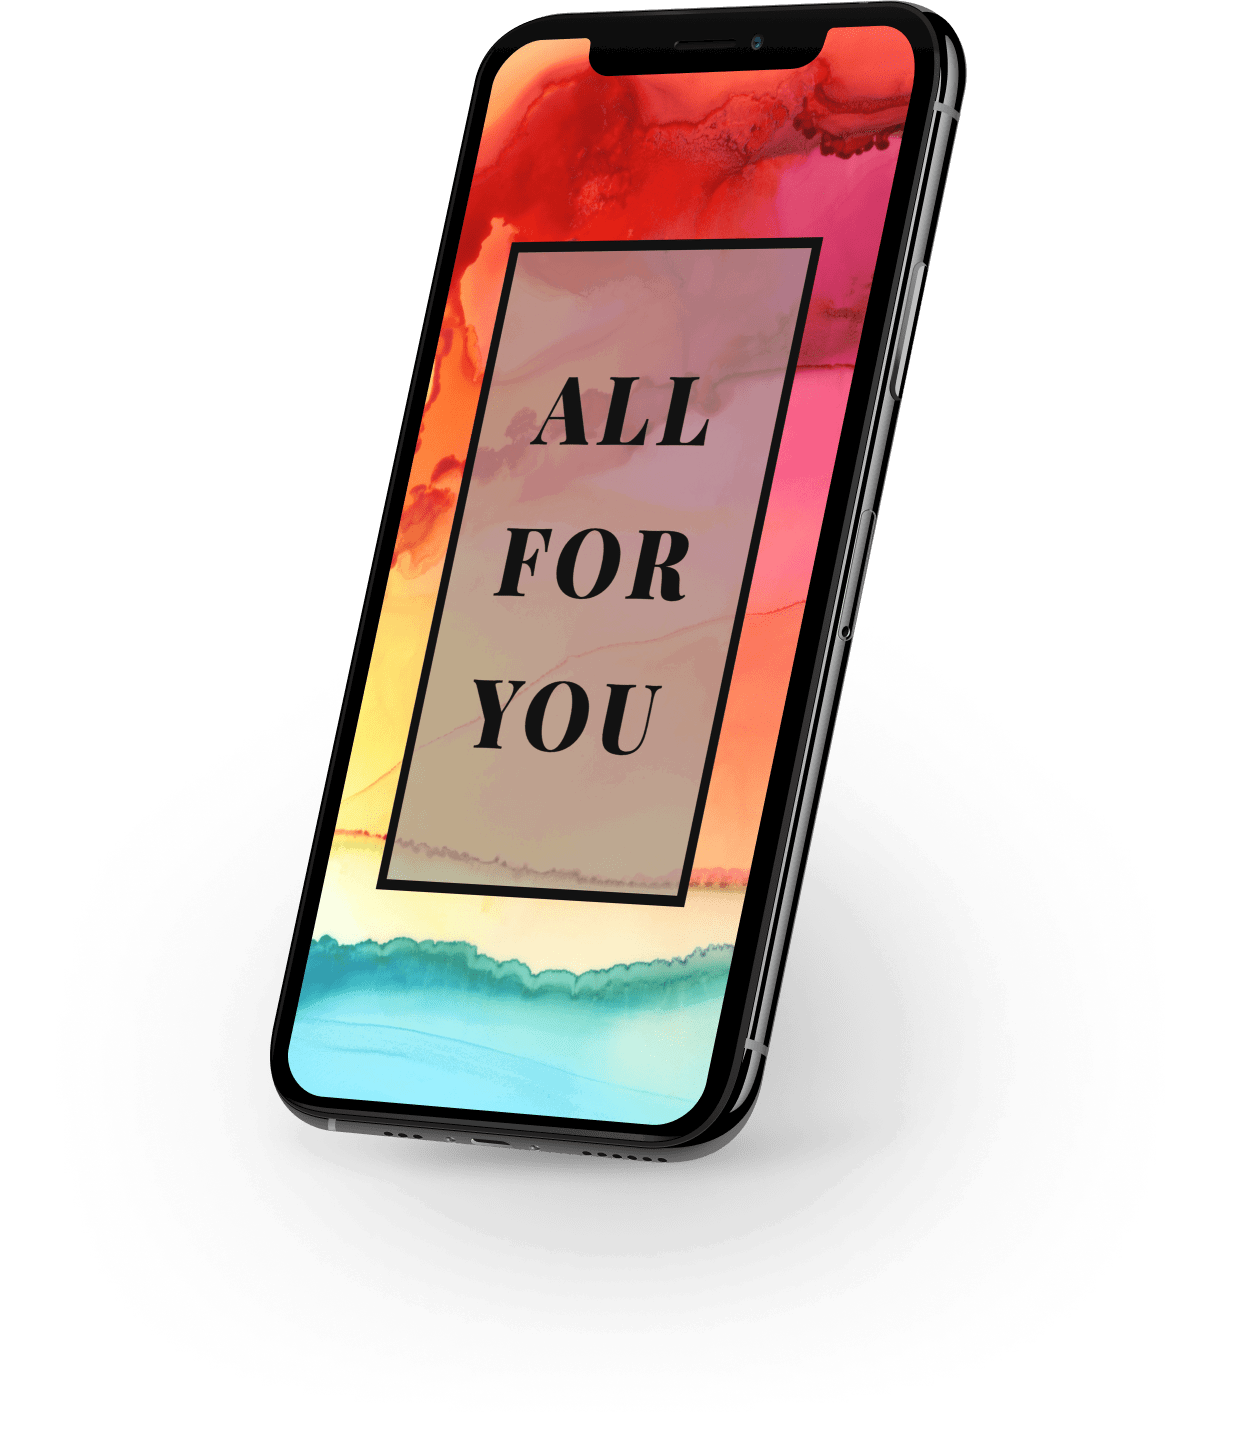 Mobiltelefon mit dem Spruch "All for you" und buntem Hintergrund am Display